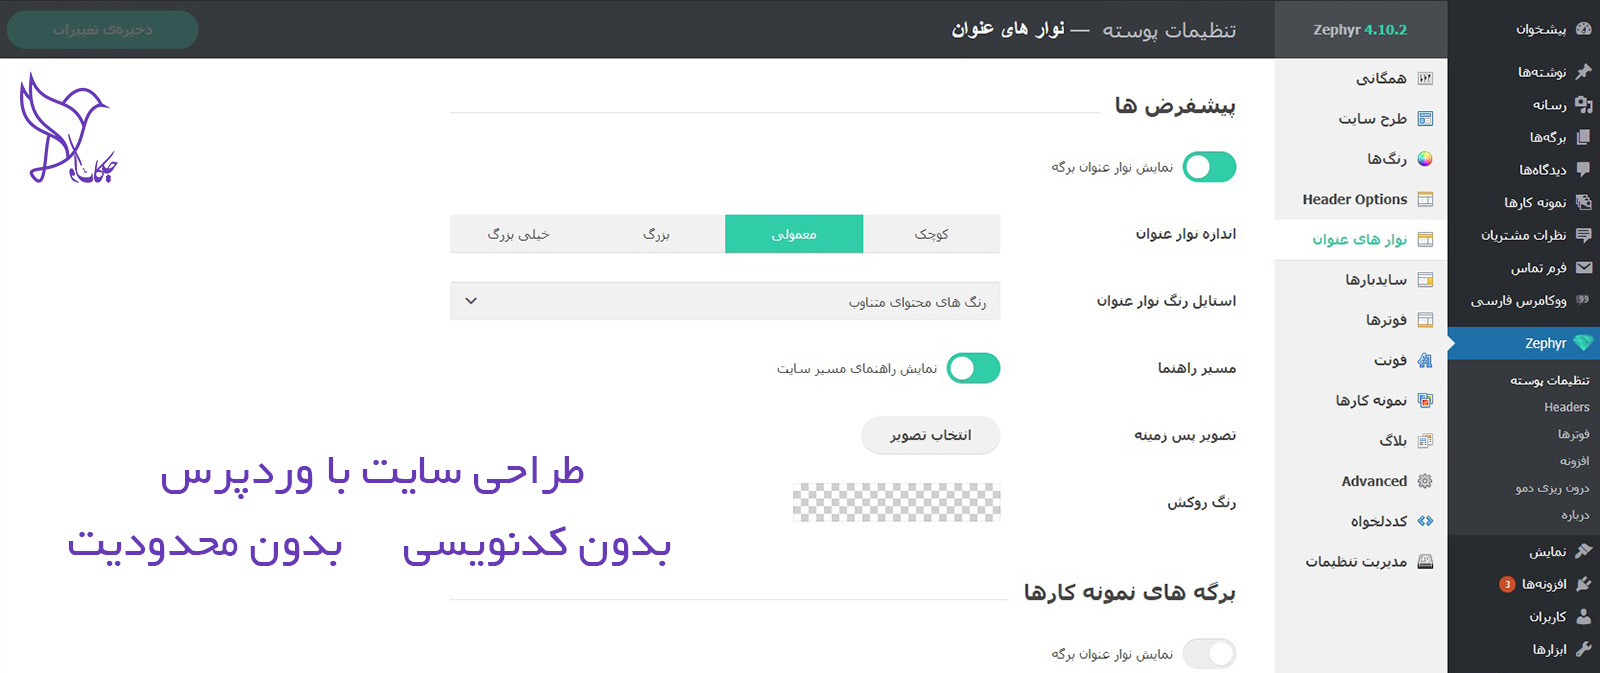 آموزش طراحی سایت فروشگاهی در یزد